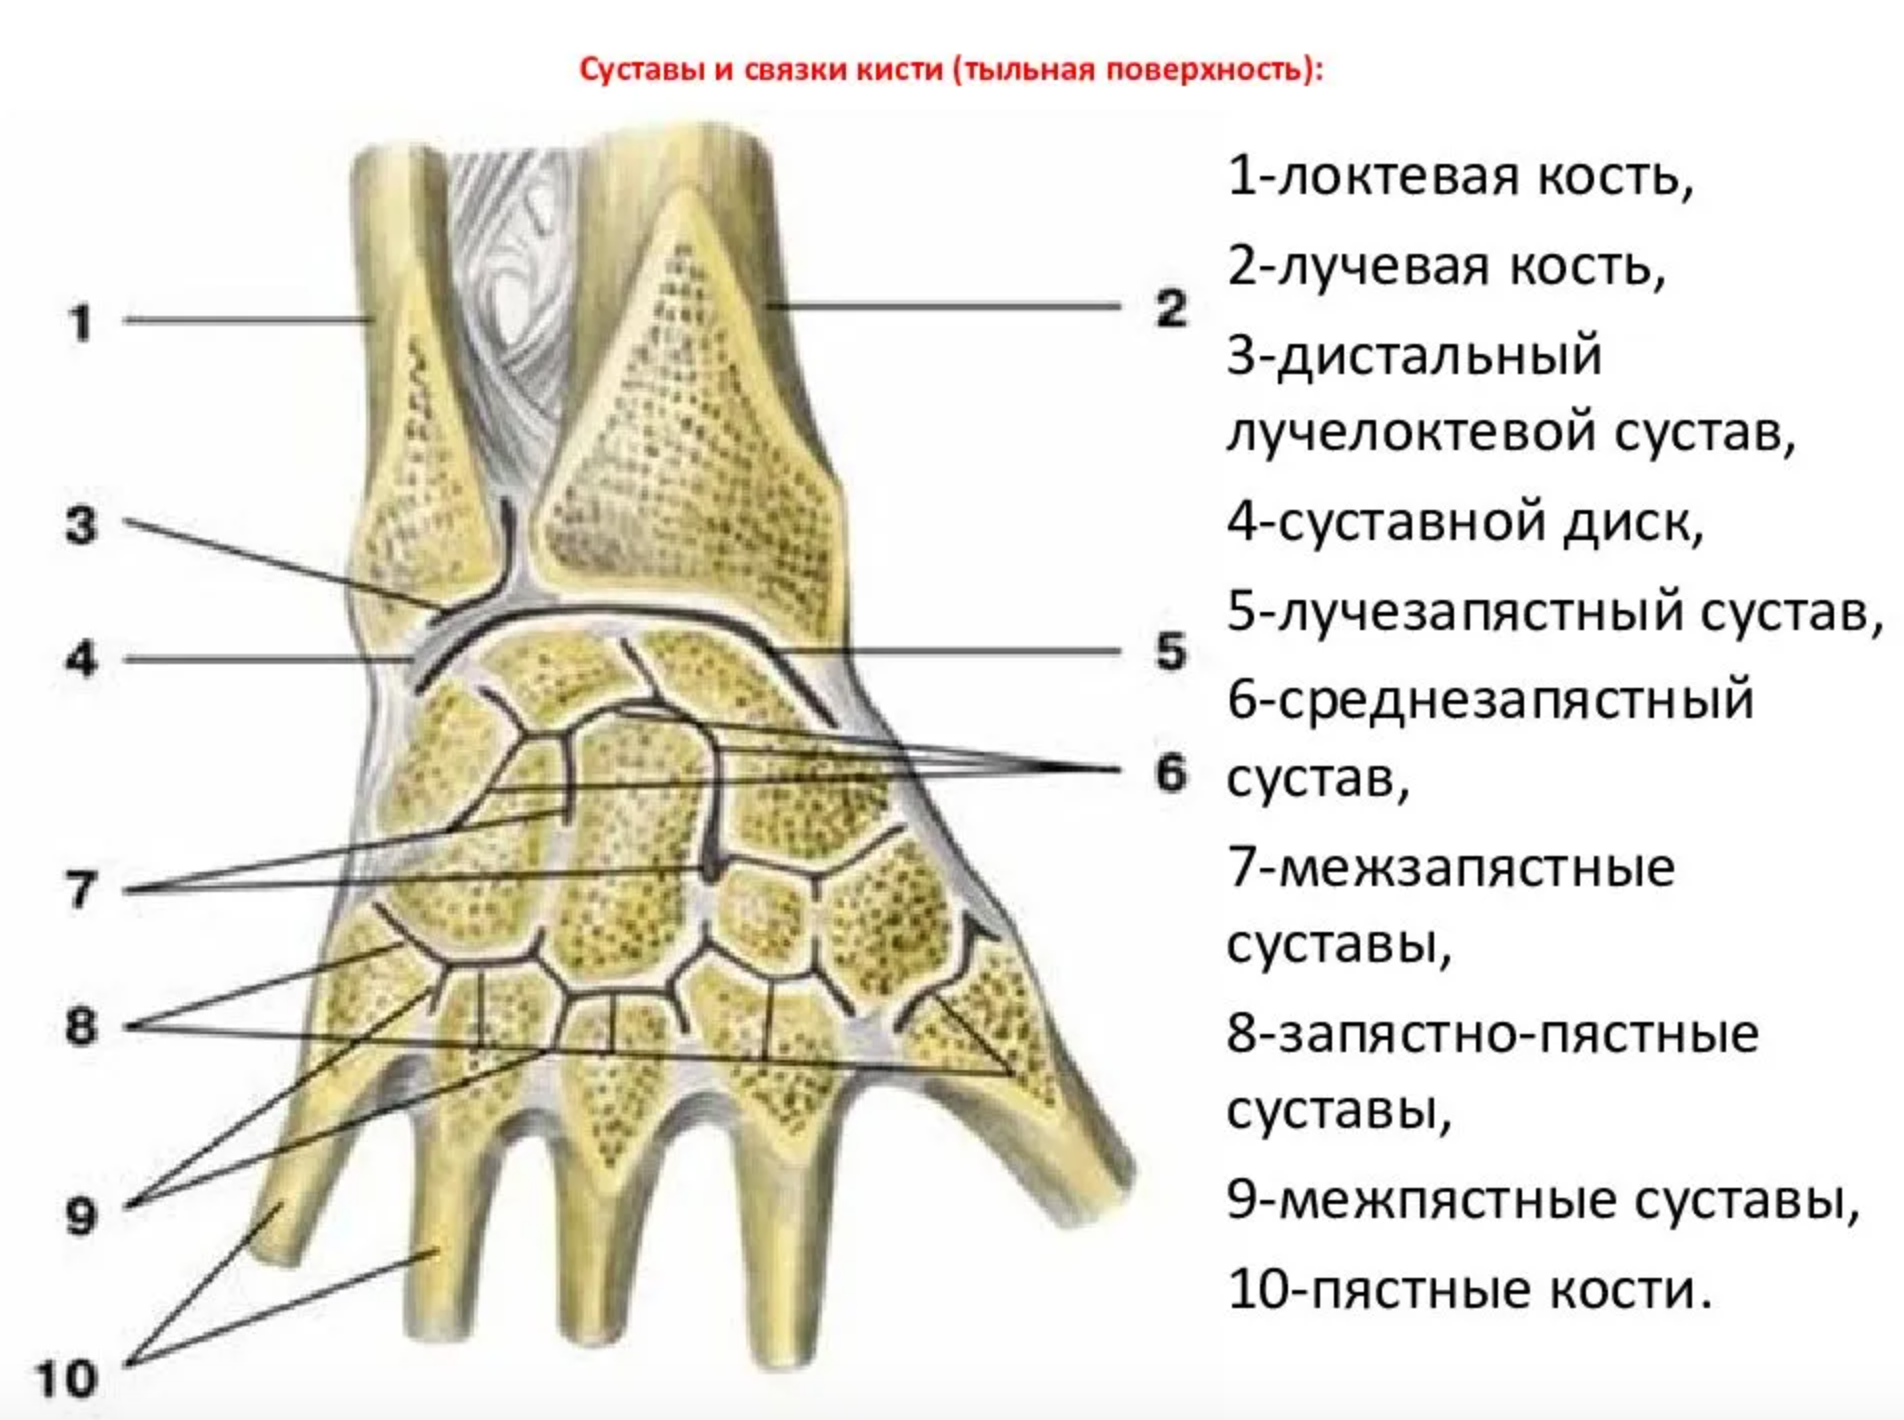 Лучезапястный сустав анатомия строение. Суставной диск лучезапястного сустава. Запястно-пястный сустав связки. Дистальный лучелоктевой сустав анатомия связки. Лучезапястный сустав